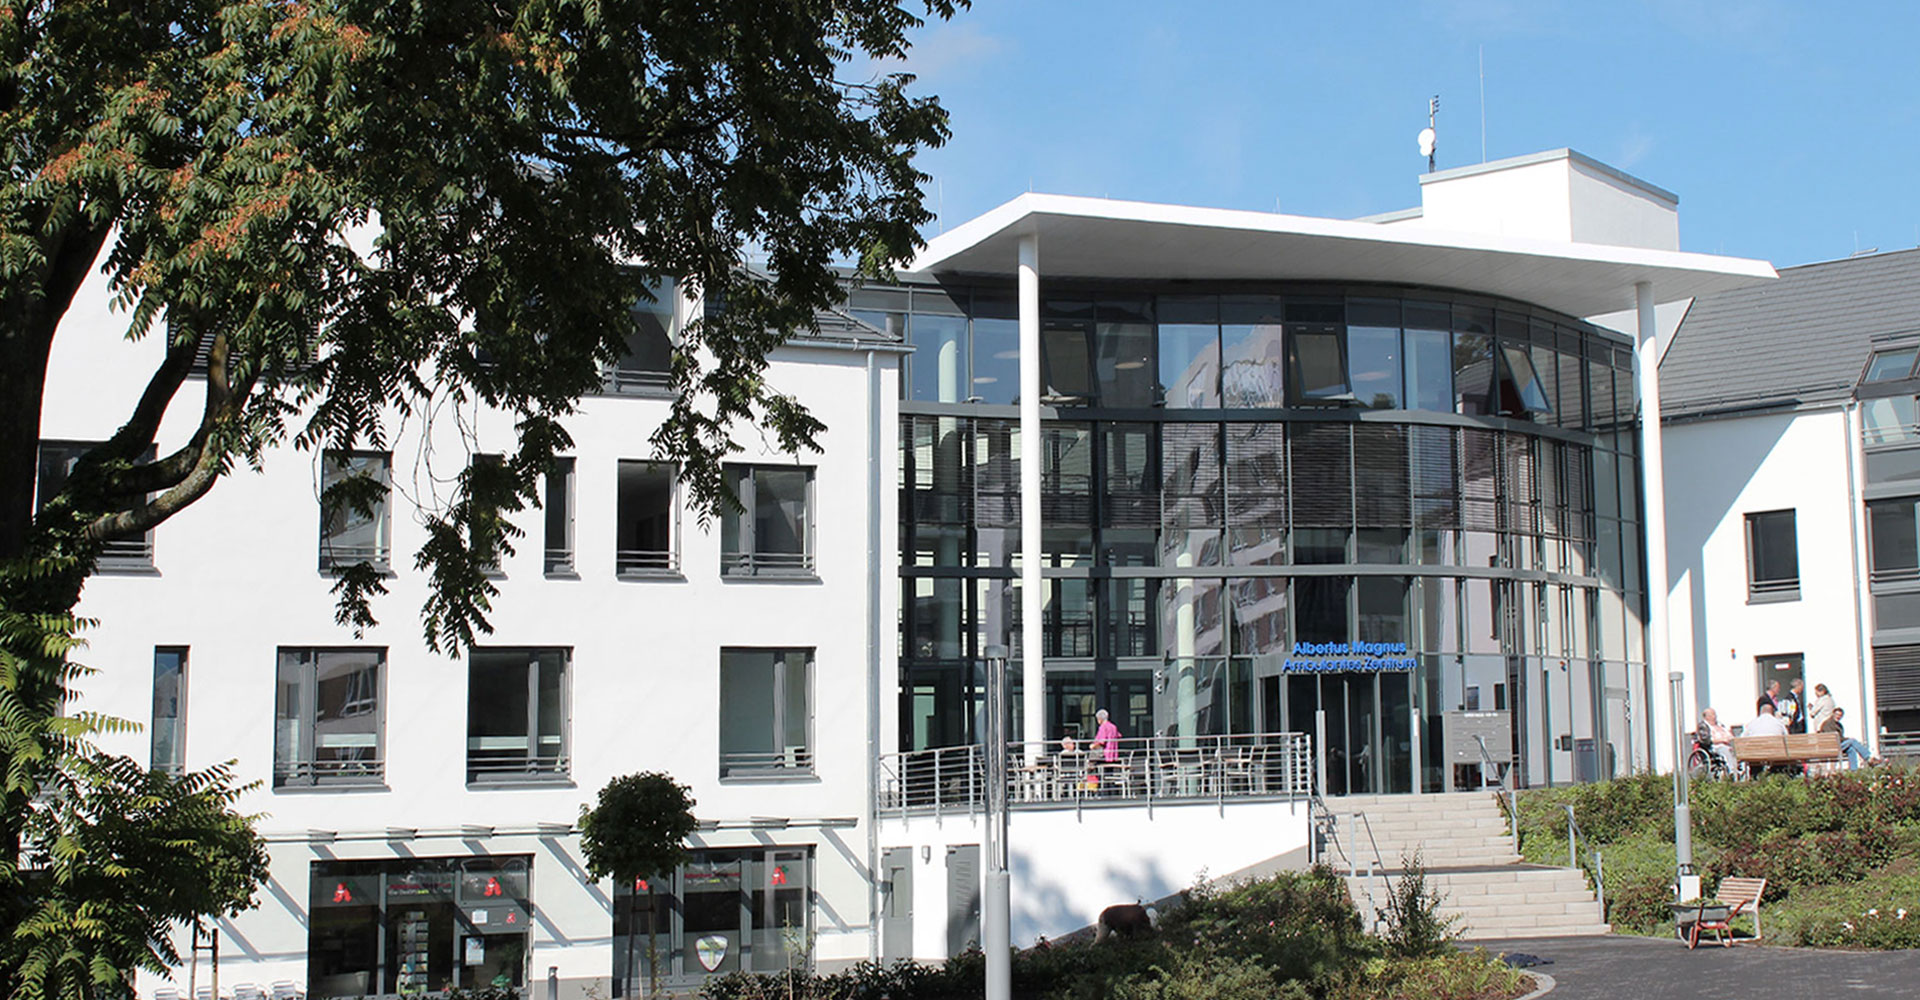 Eingang Ambulantes Zentrum Siegen, mga consult Rheinbreitbach, Konzeption und Planung Wohngebäude